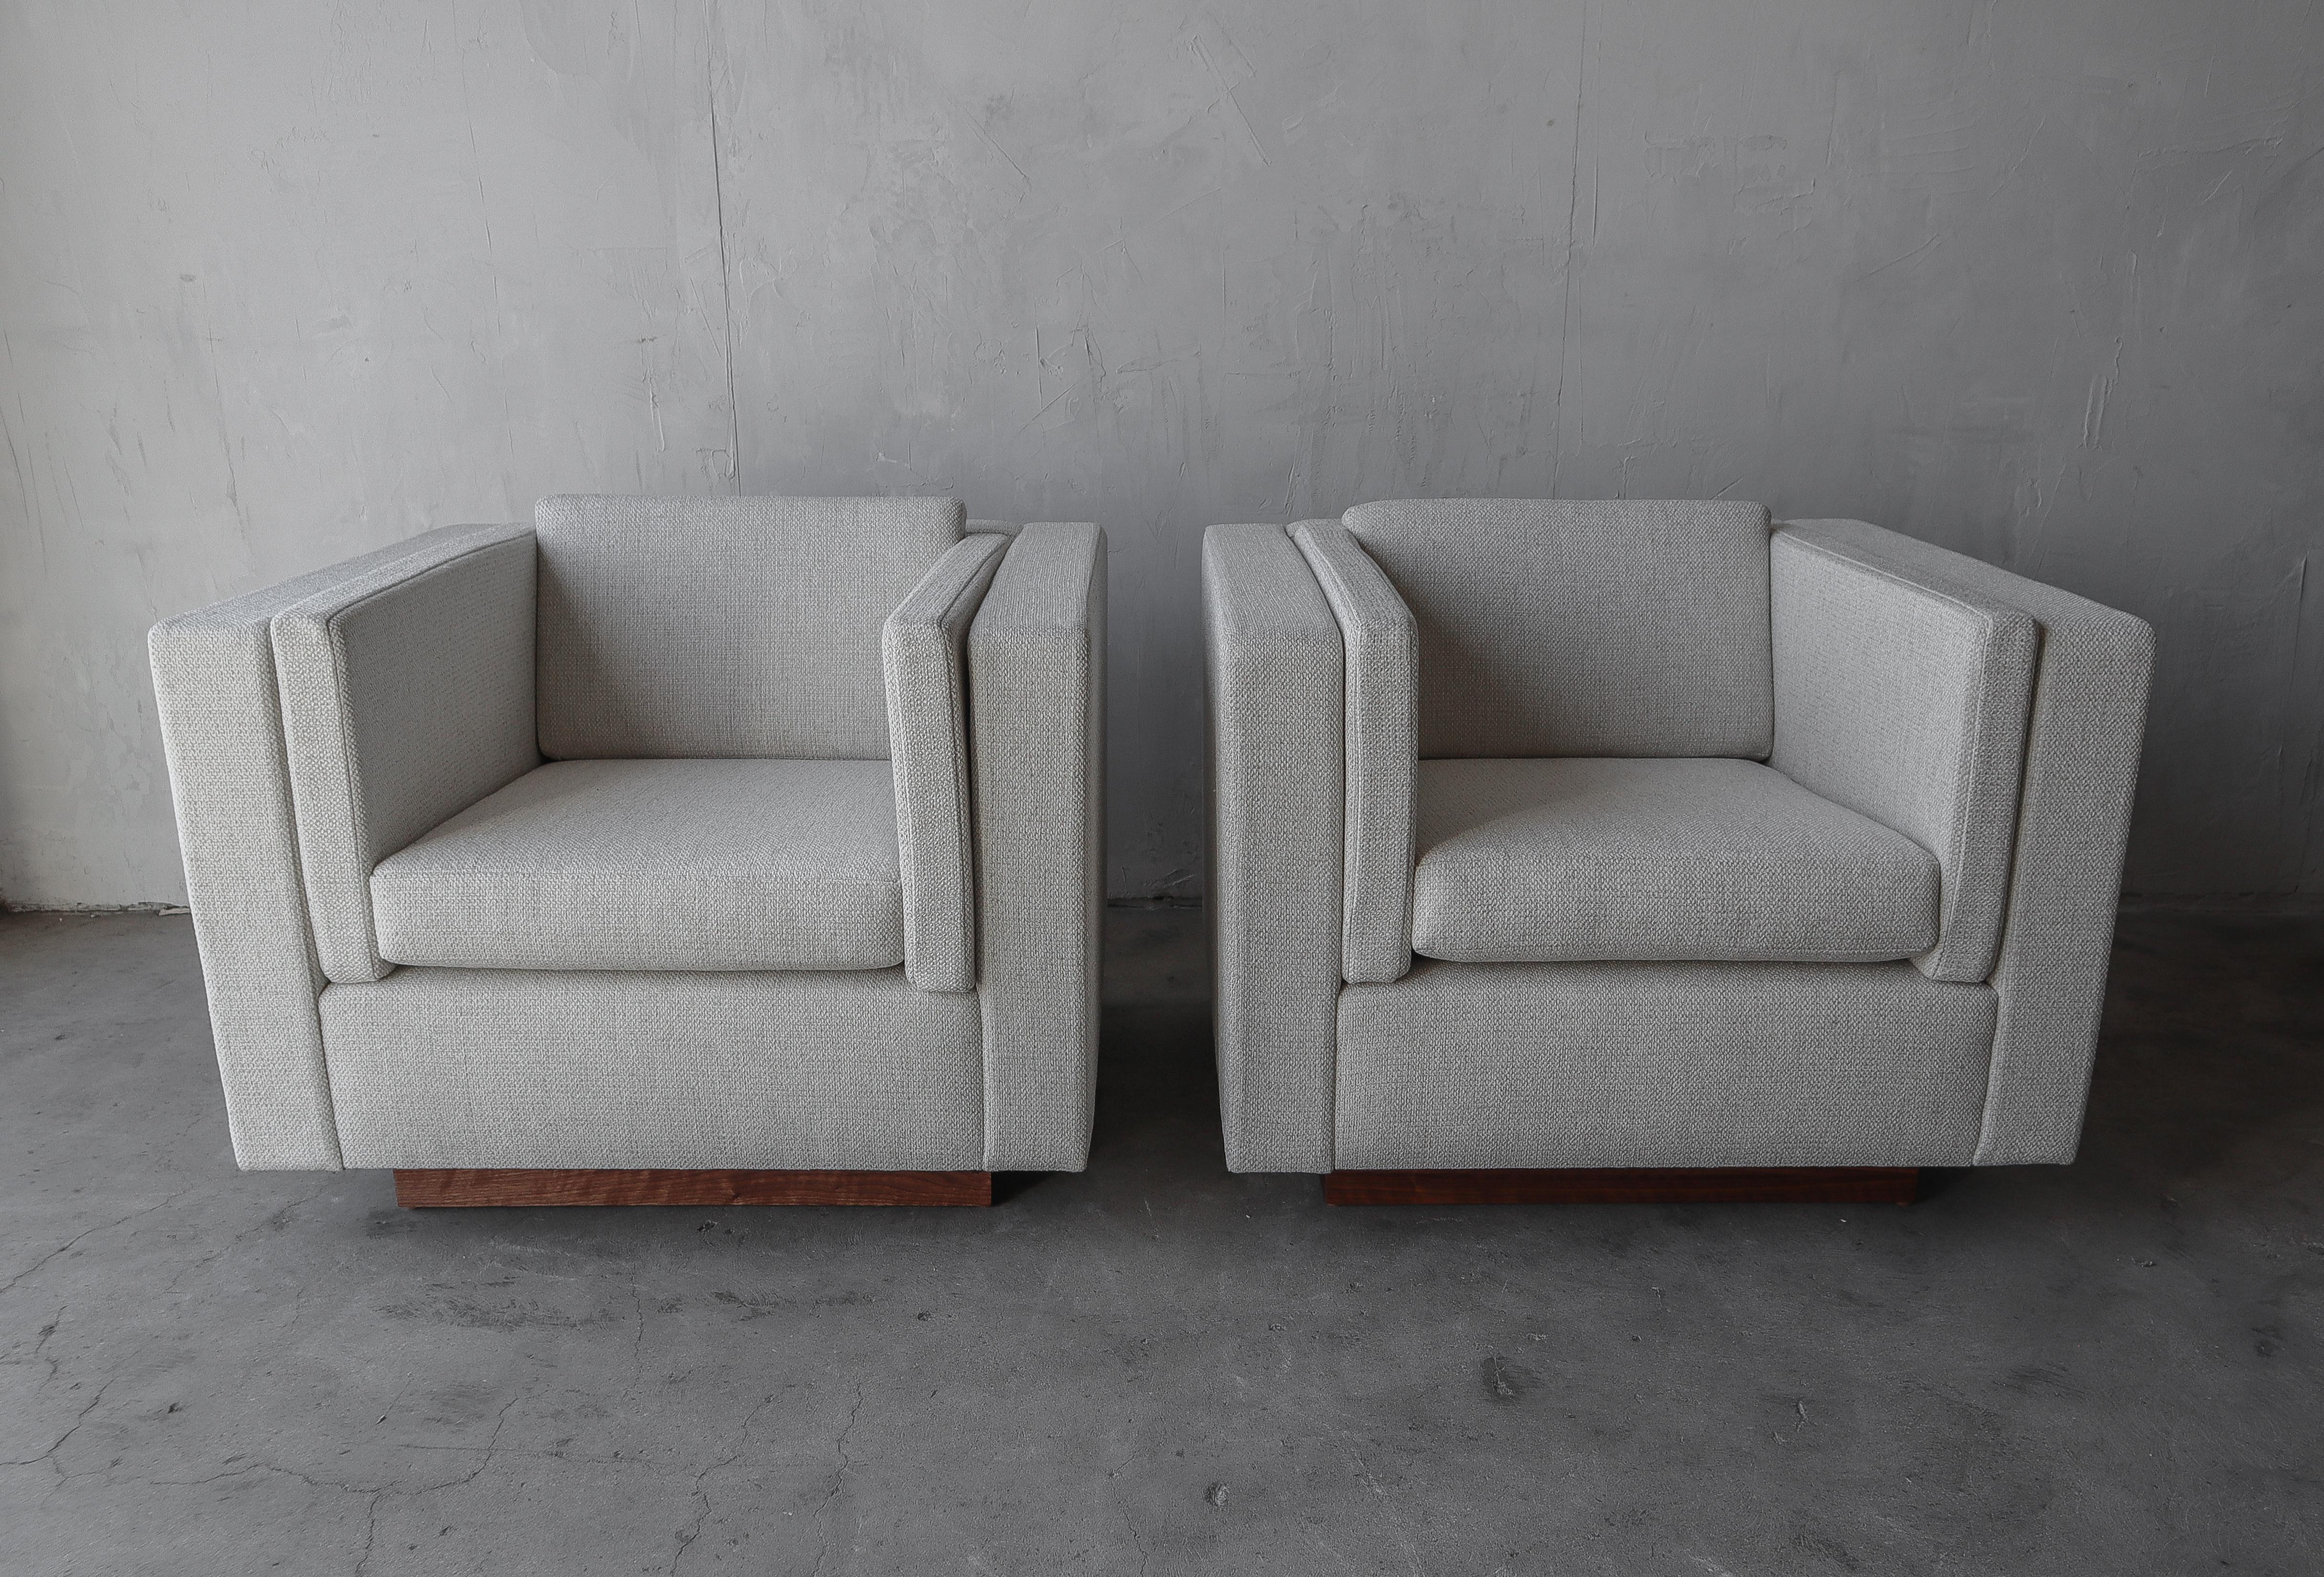 Dies ist ein wunderschönes Paar Würfel-Loungesessel mit schönen Sockeln aus Walnussholz. Der minimalistische Stil, die klaren Linien und die neutrale Polsterung machen sie zur perfekten Ergänzung für jede Einrichtung.

Die Stühle wurden